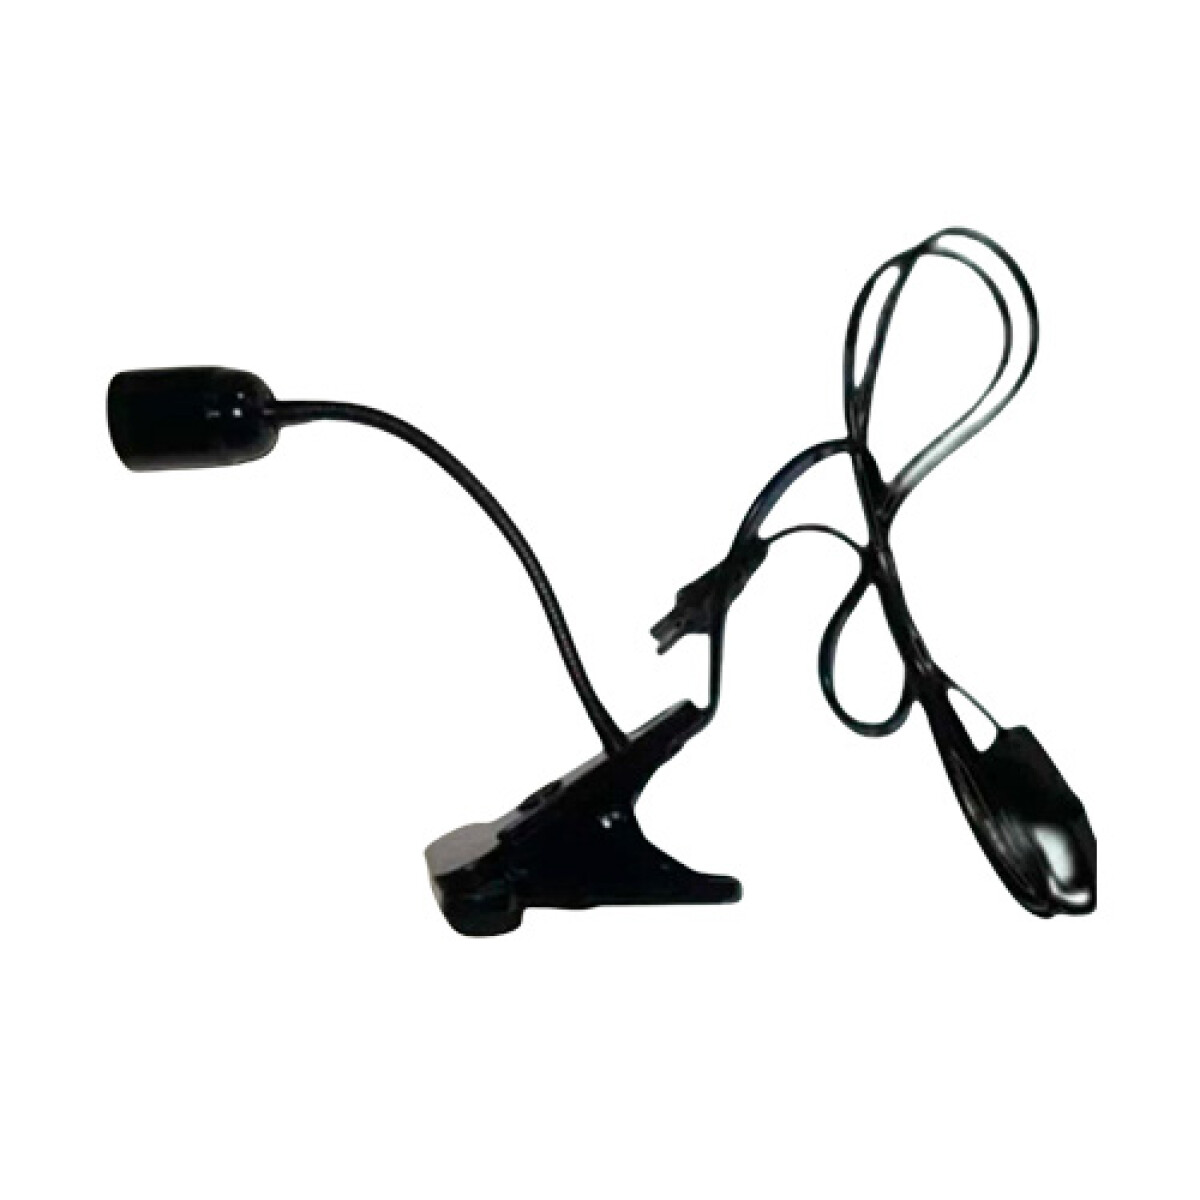 Portátil clip negra con socket E27 - 001 